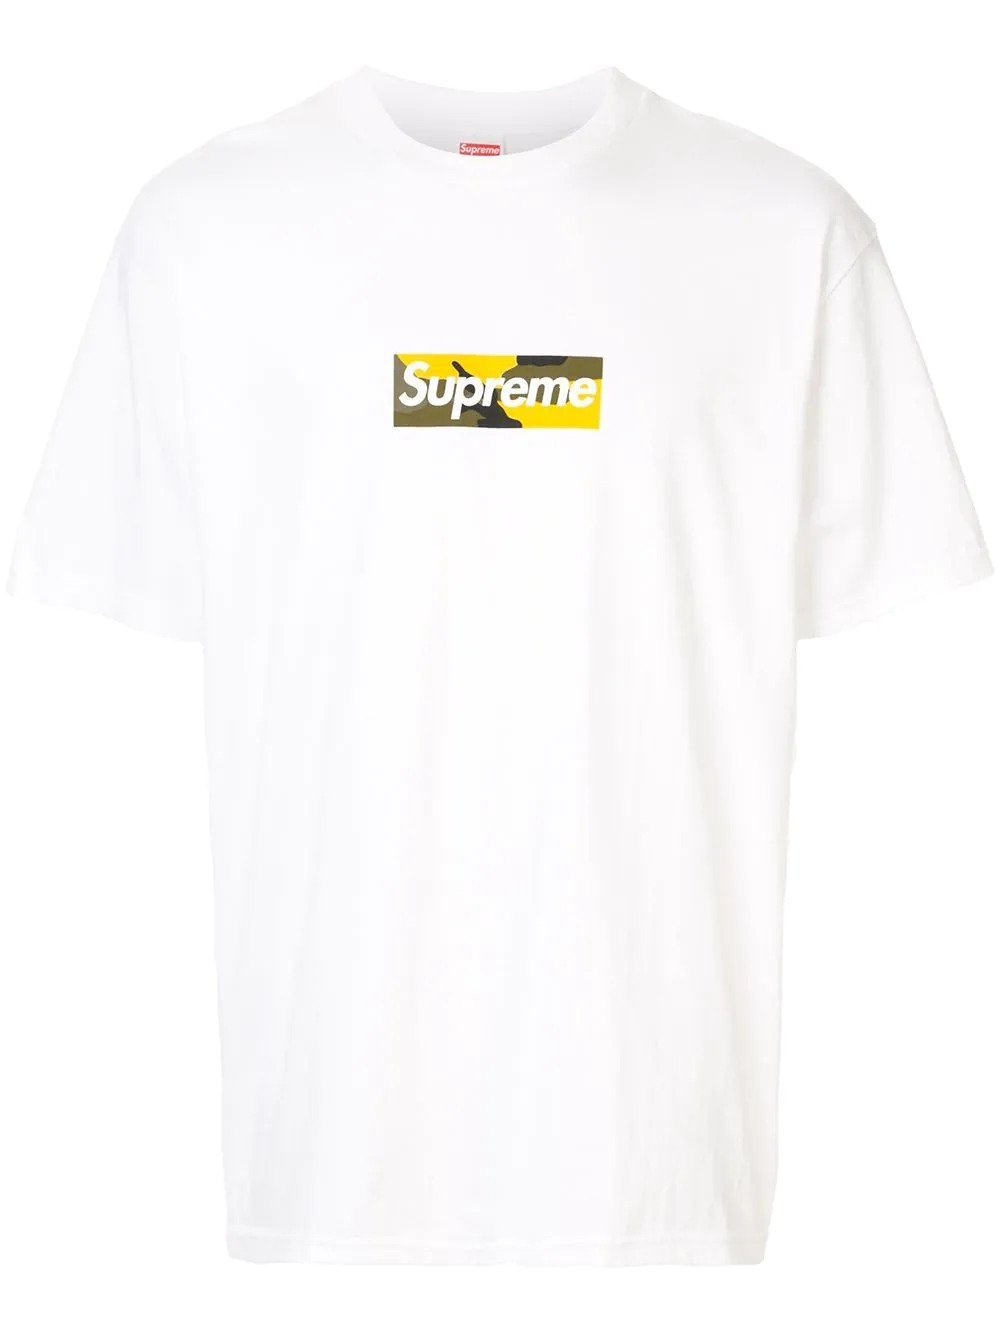 Supreme x Louis Vuitton Box Logo T Shirt - Oliver's Archive